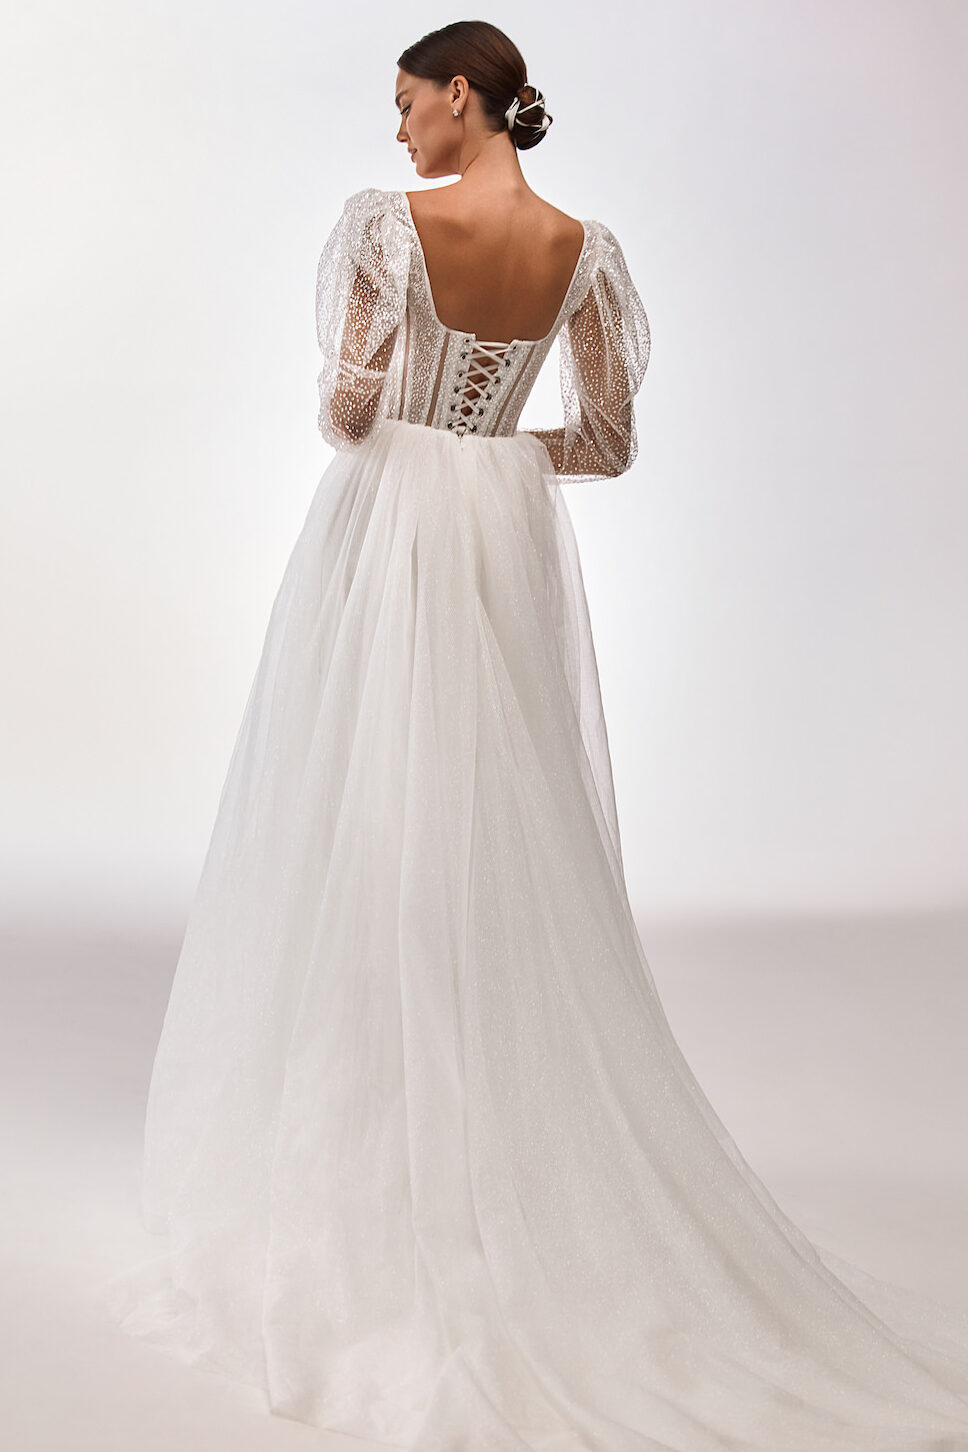 Wedding Dress 2022 by Milla Nova - Gabi White Lace